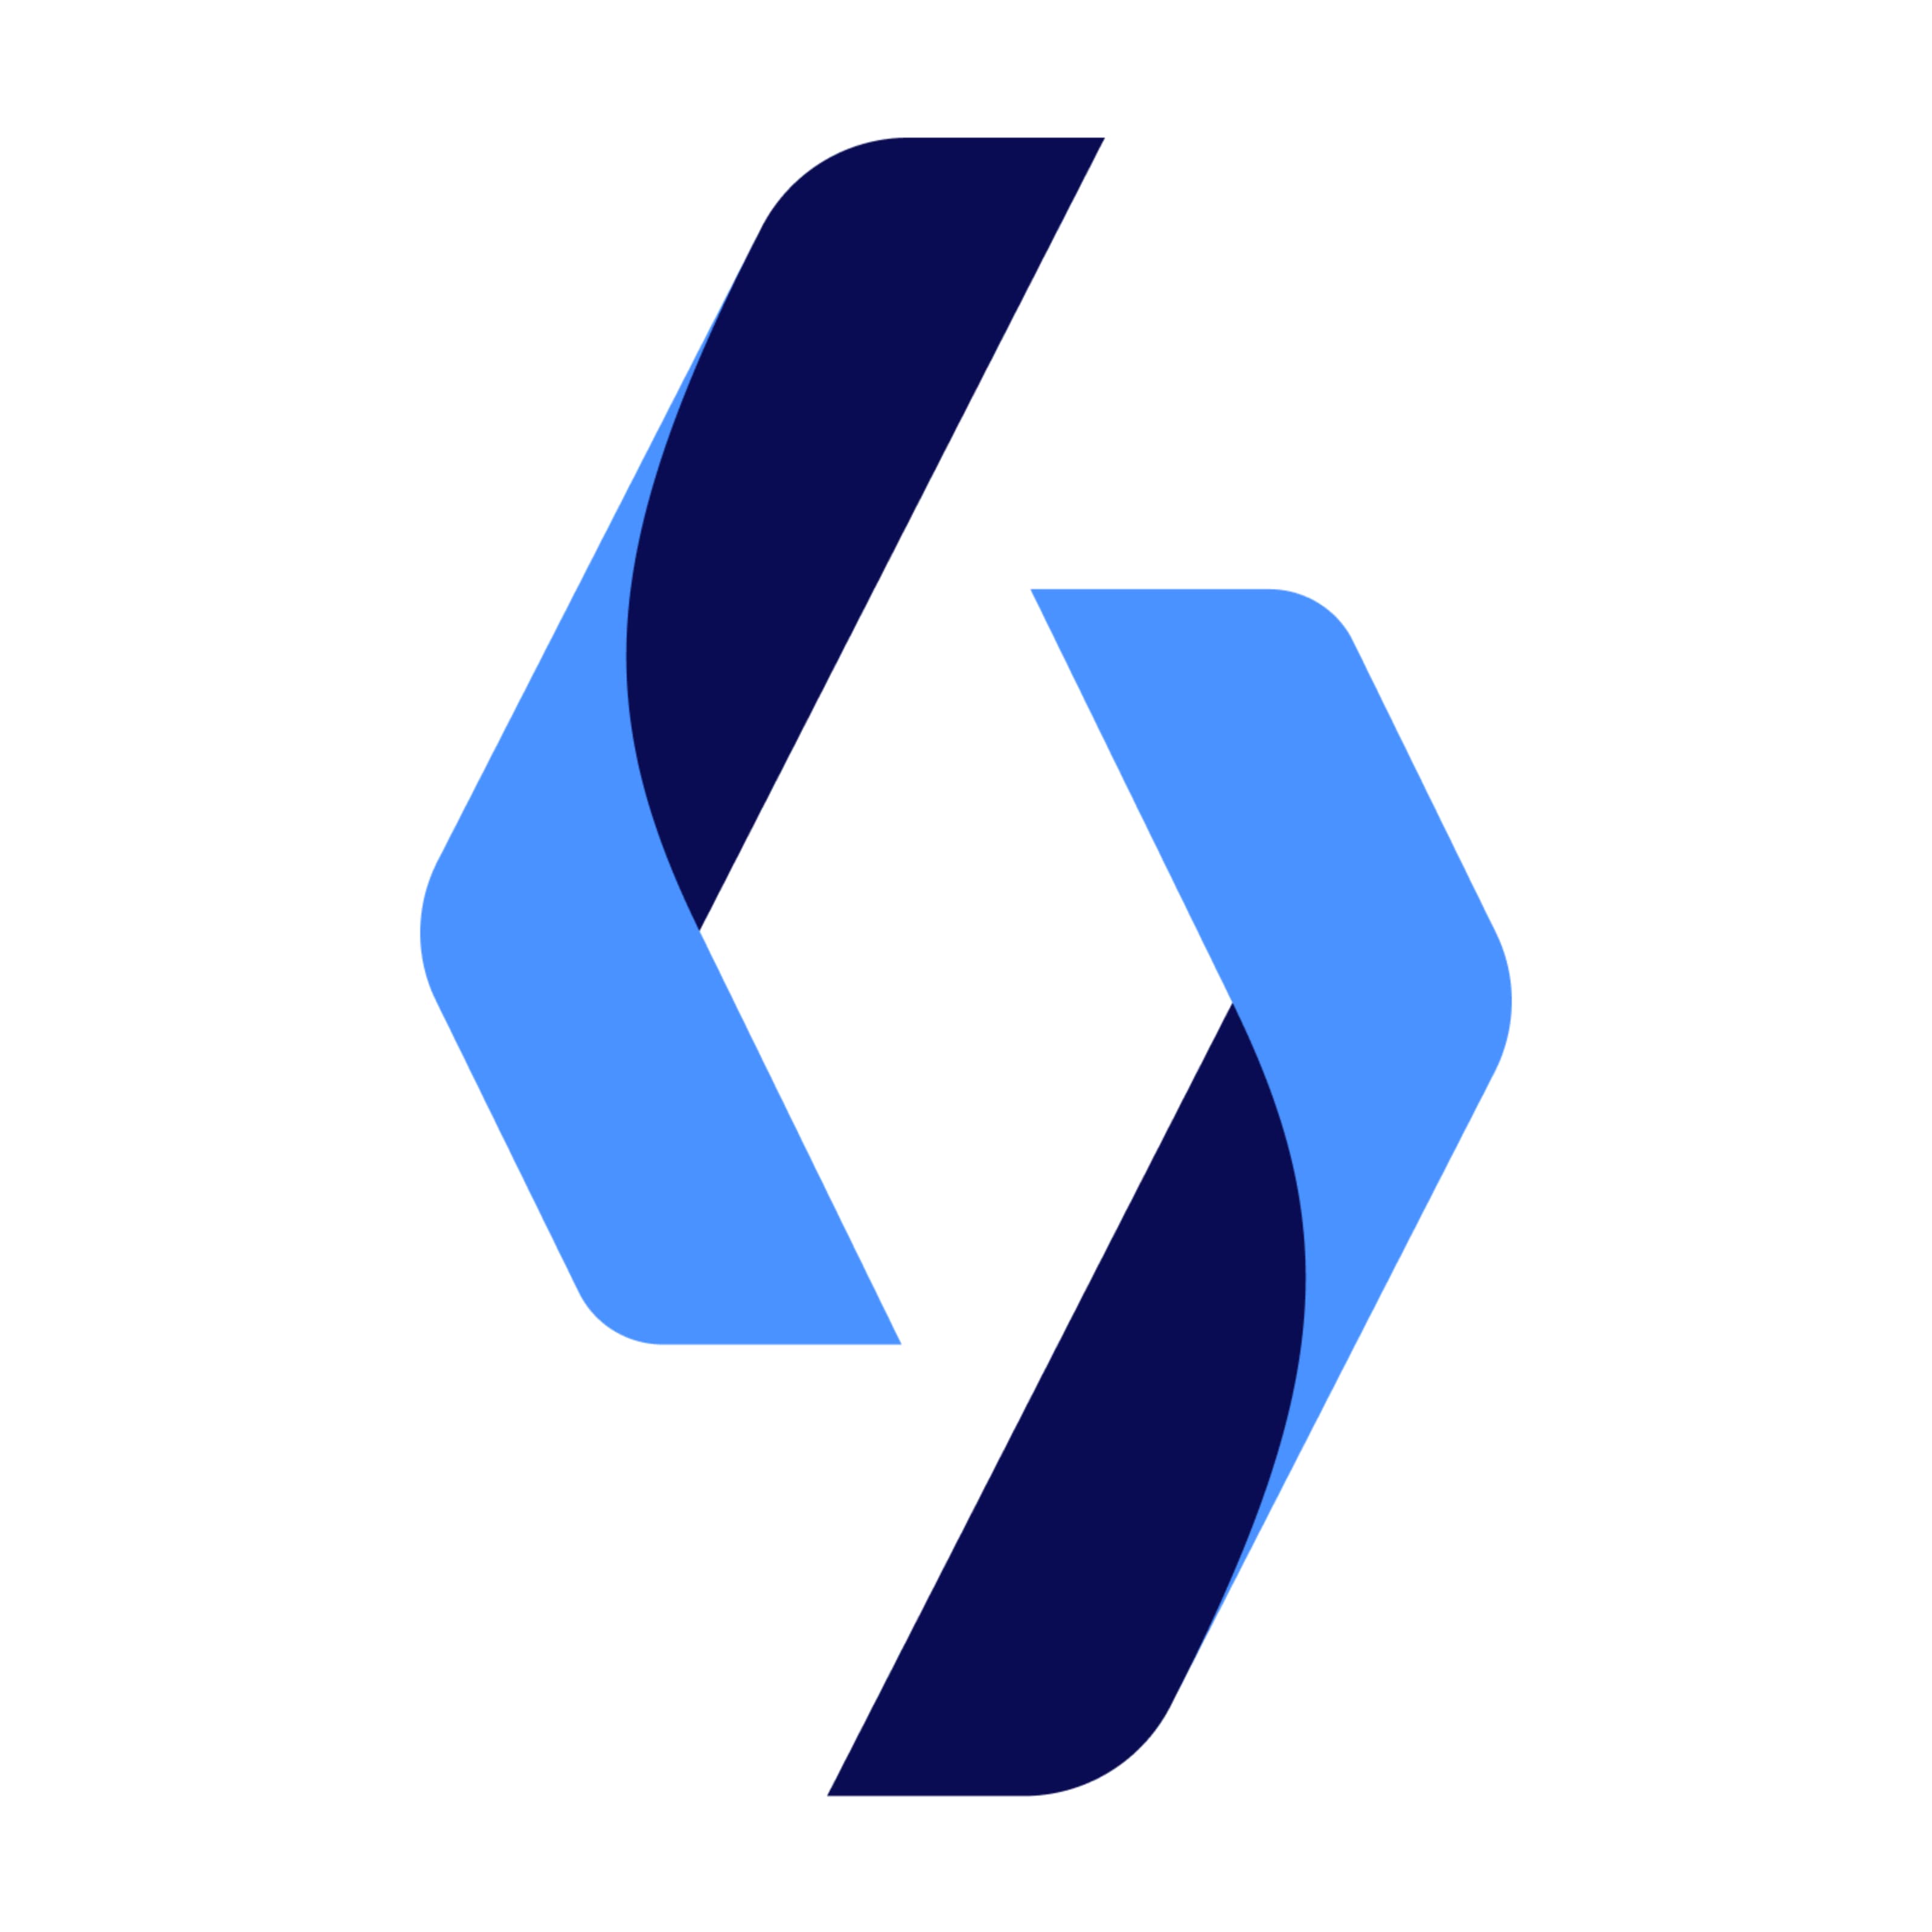 SolGuruz's logo